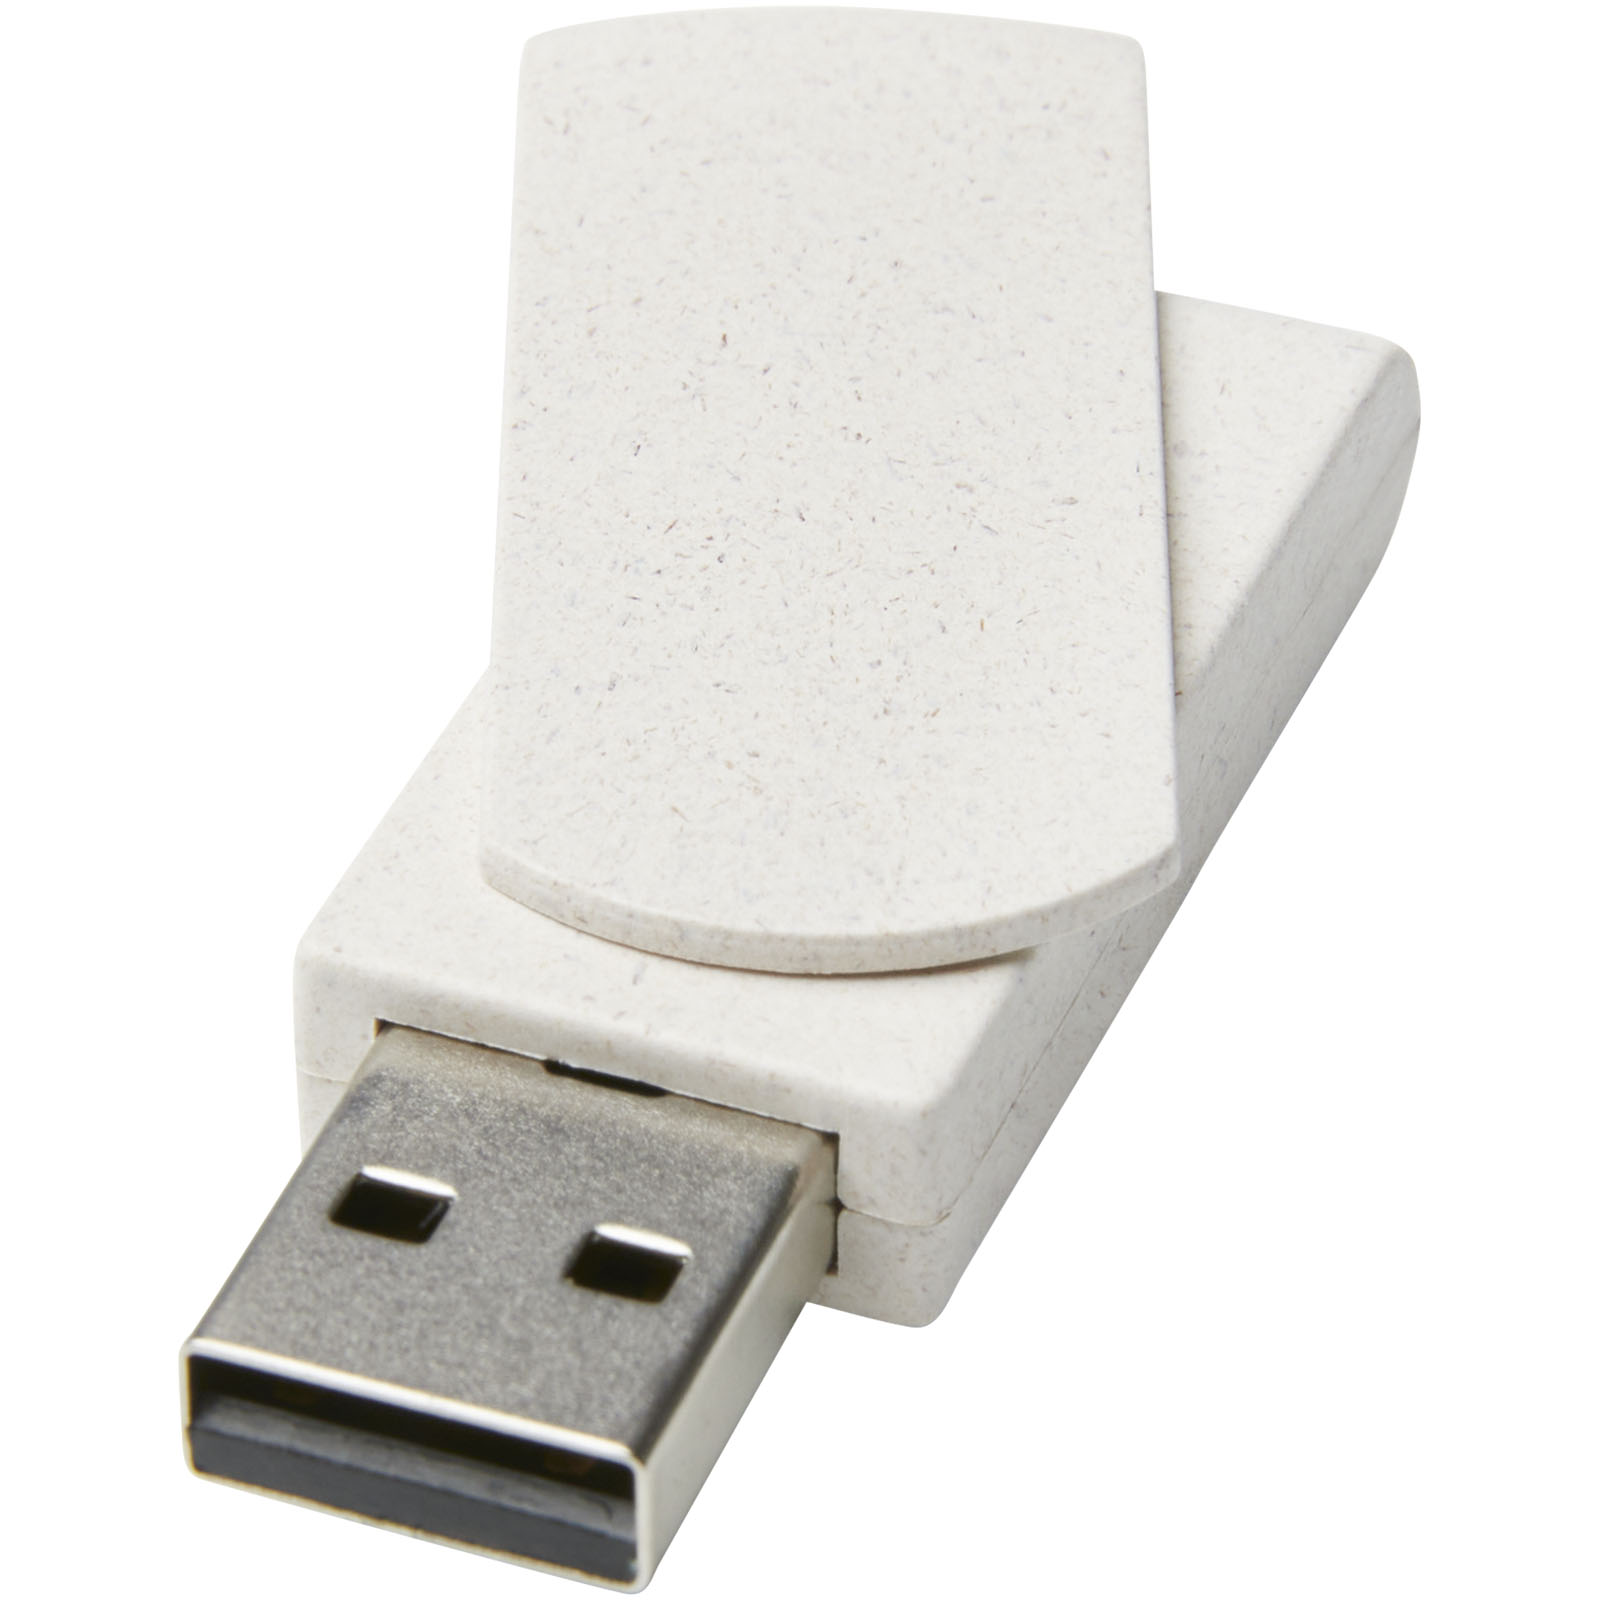 Clés USB publicitaires - Clé USB Rotate 4 Go en paille de blé - 0